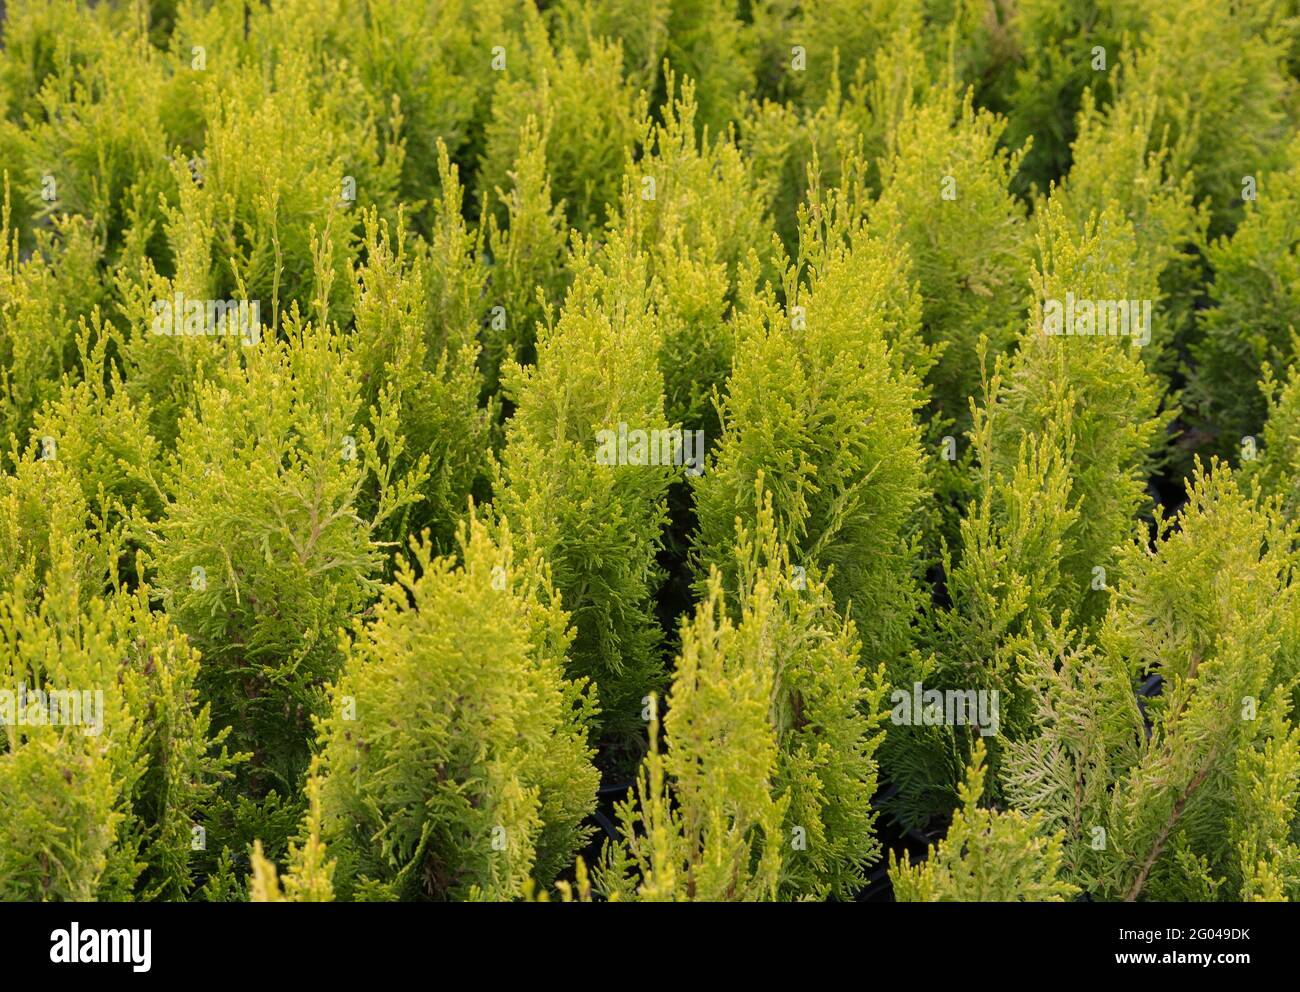 Smaragd. Arborvitae occidentalis Janed Gold or Highlights Arborvitae Stock Photo